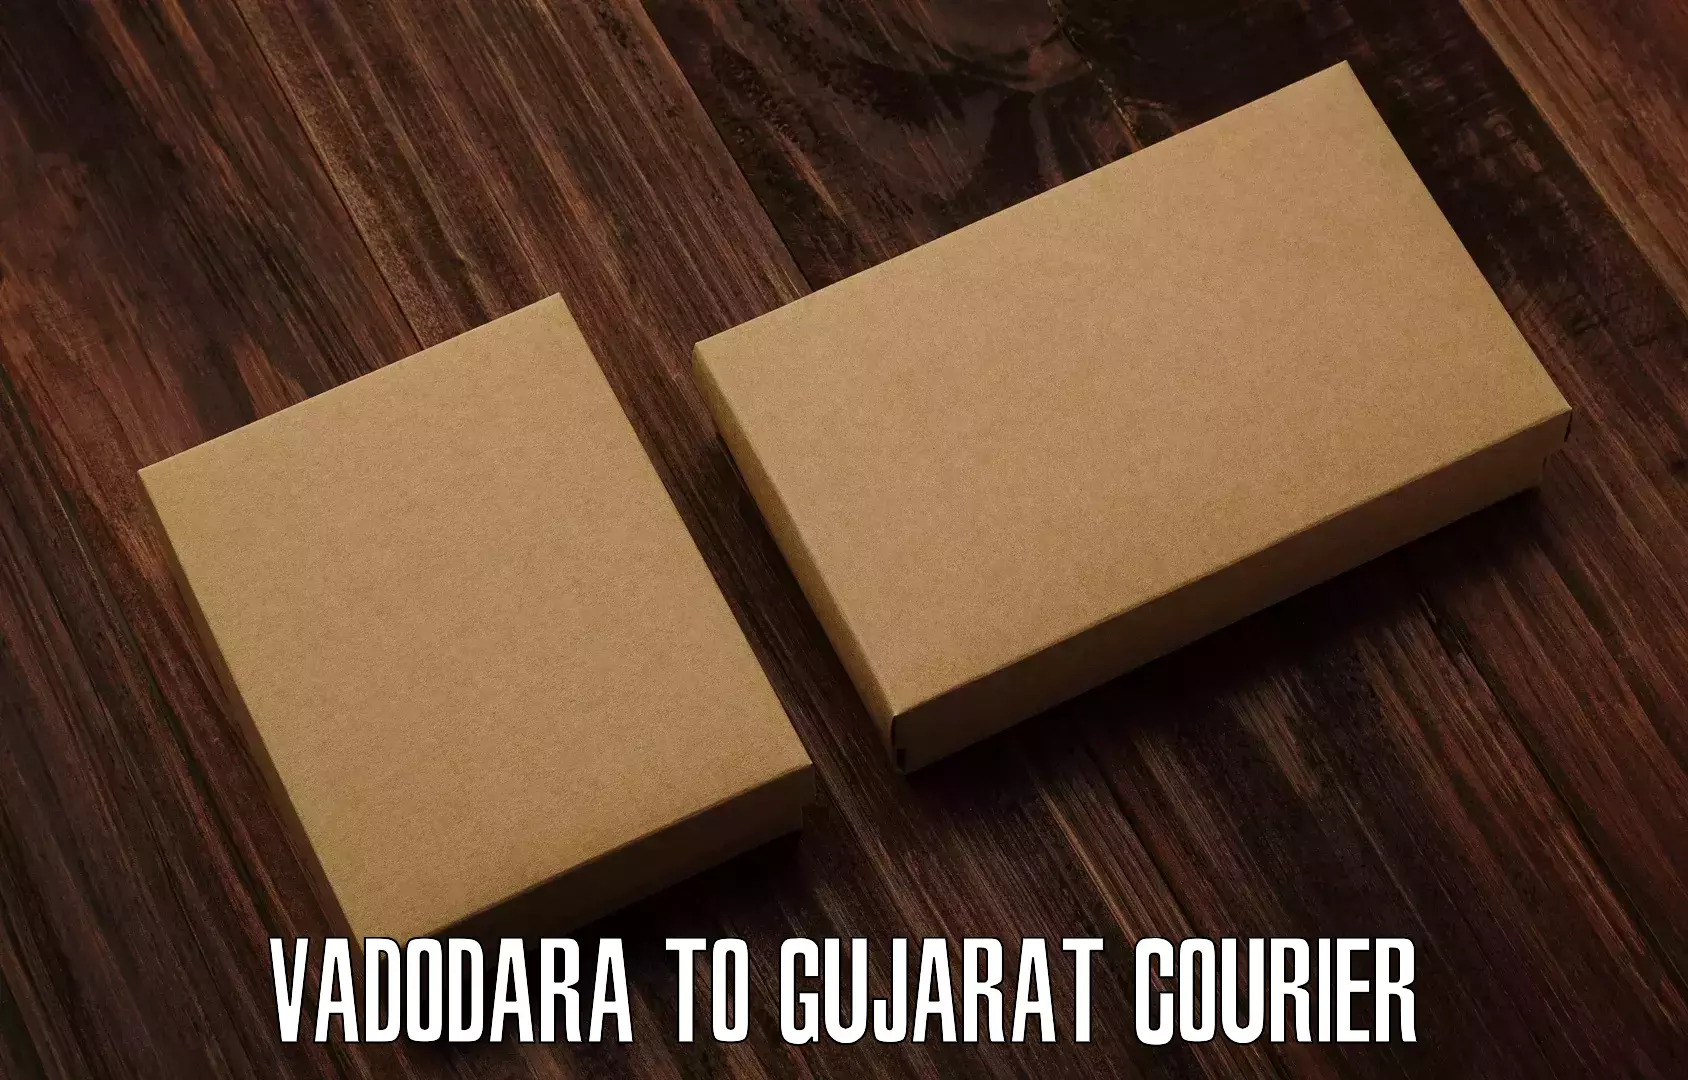 Professional parcel services Vadodara to Gujarat